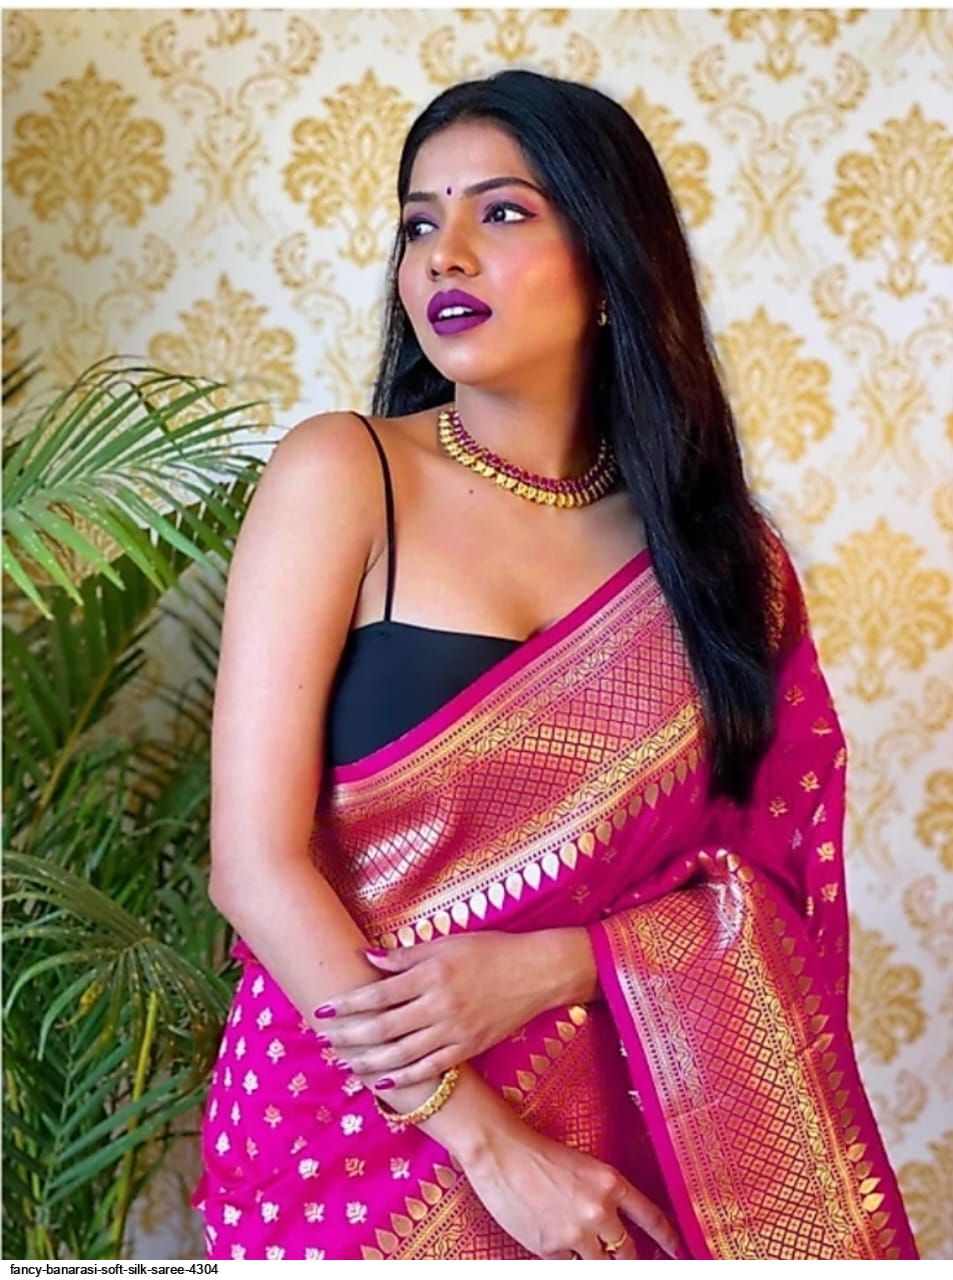 Fancy Banarasi Soft Silk Saree 4304 